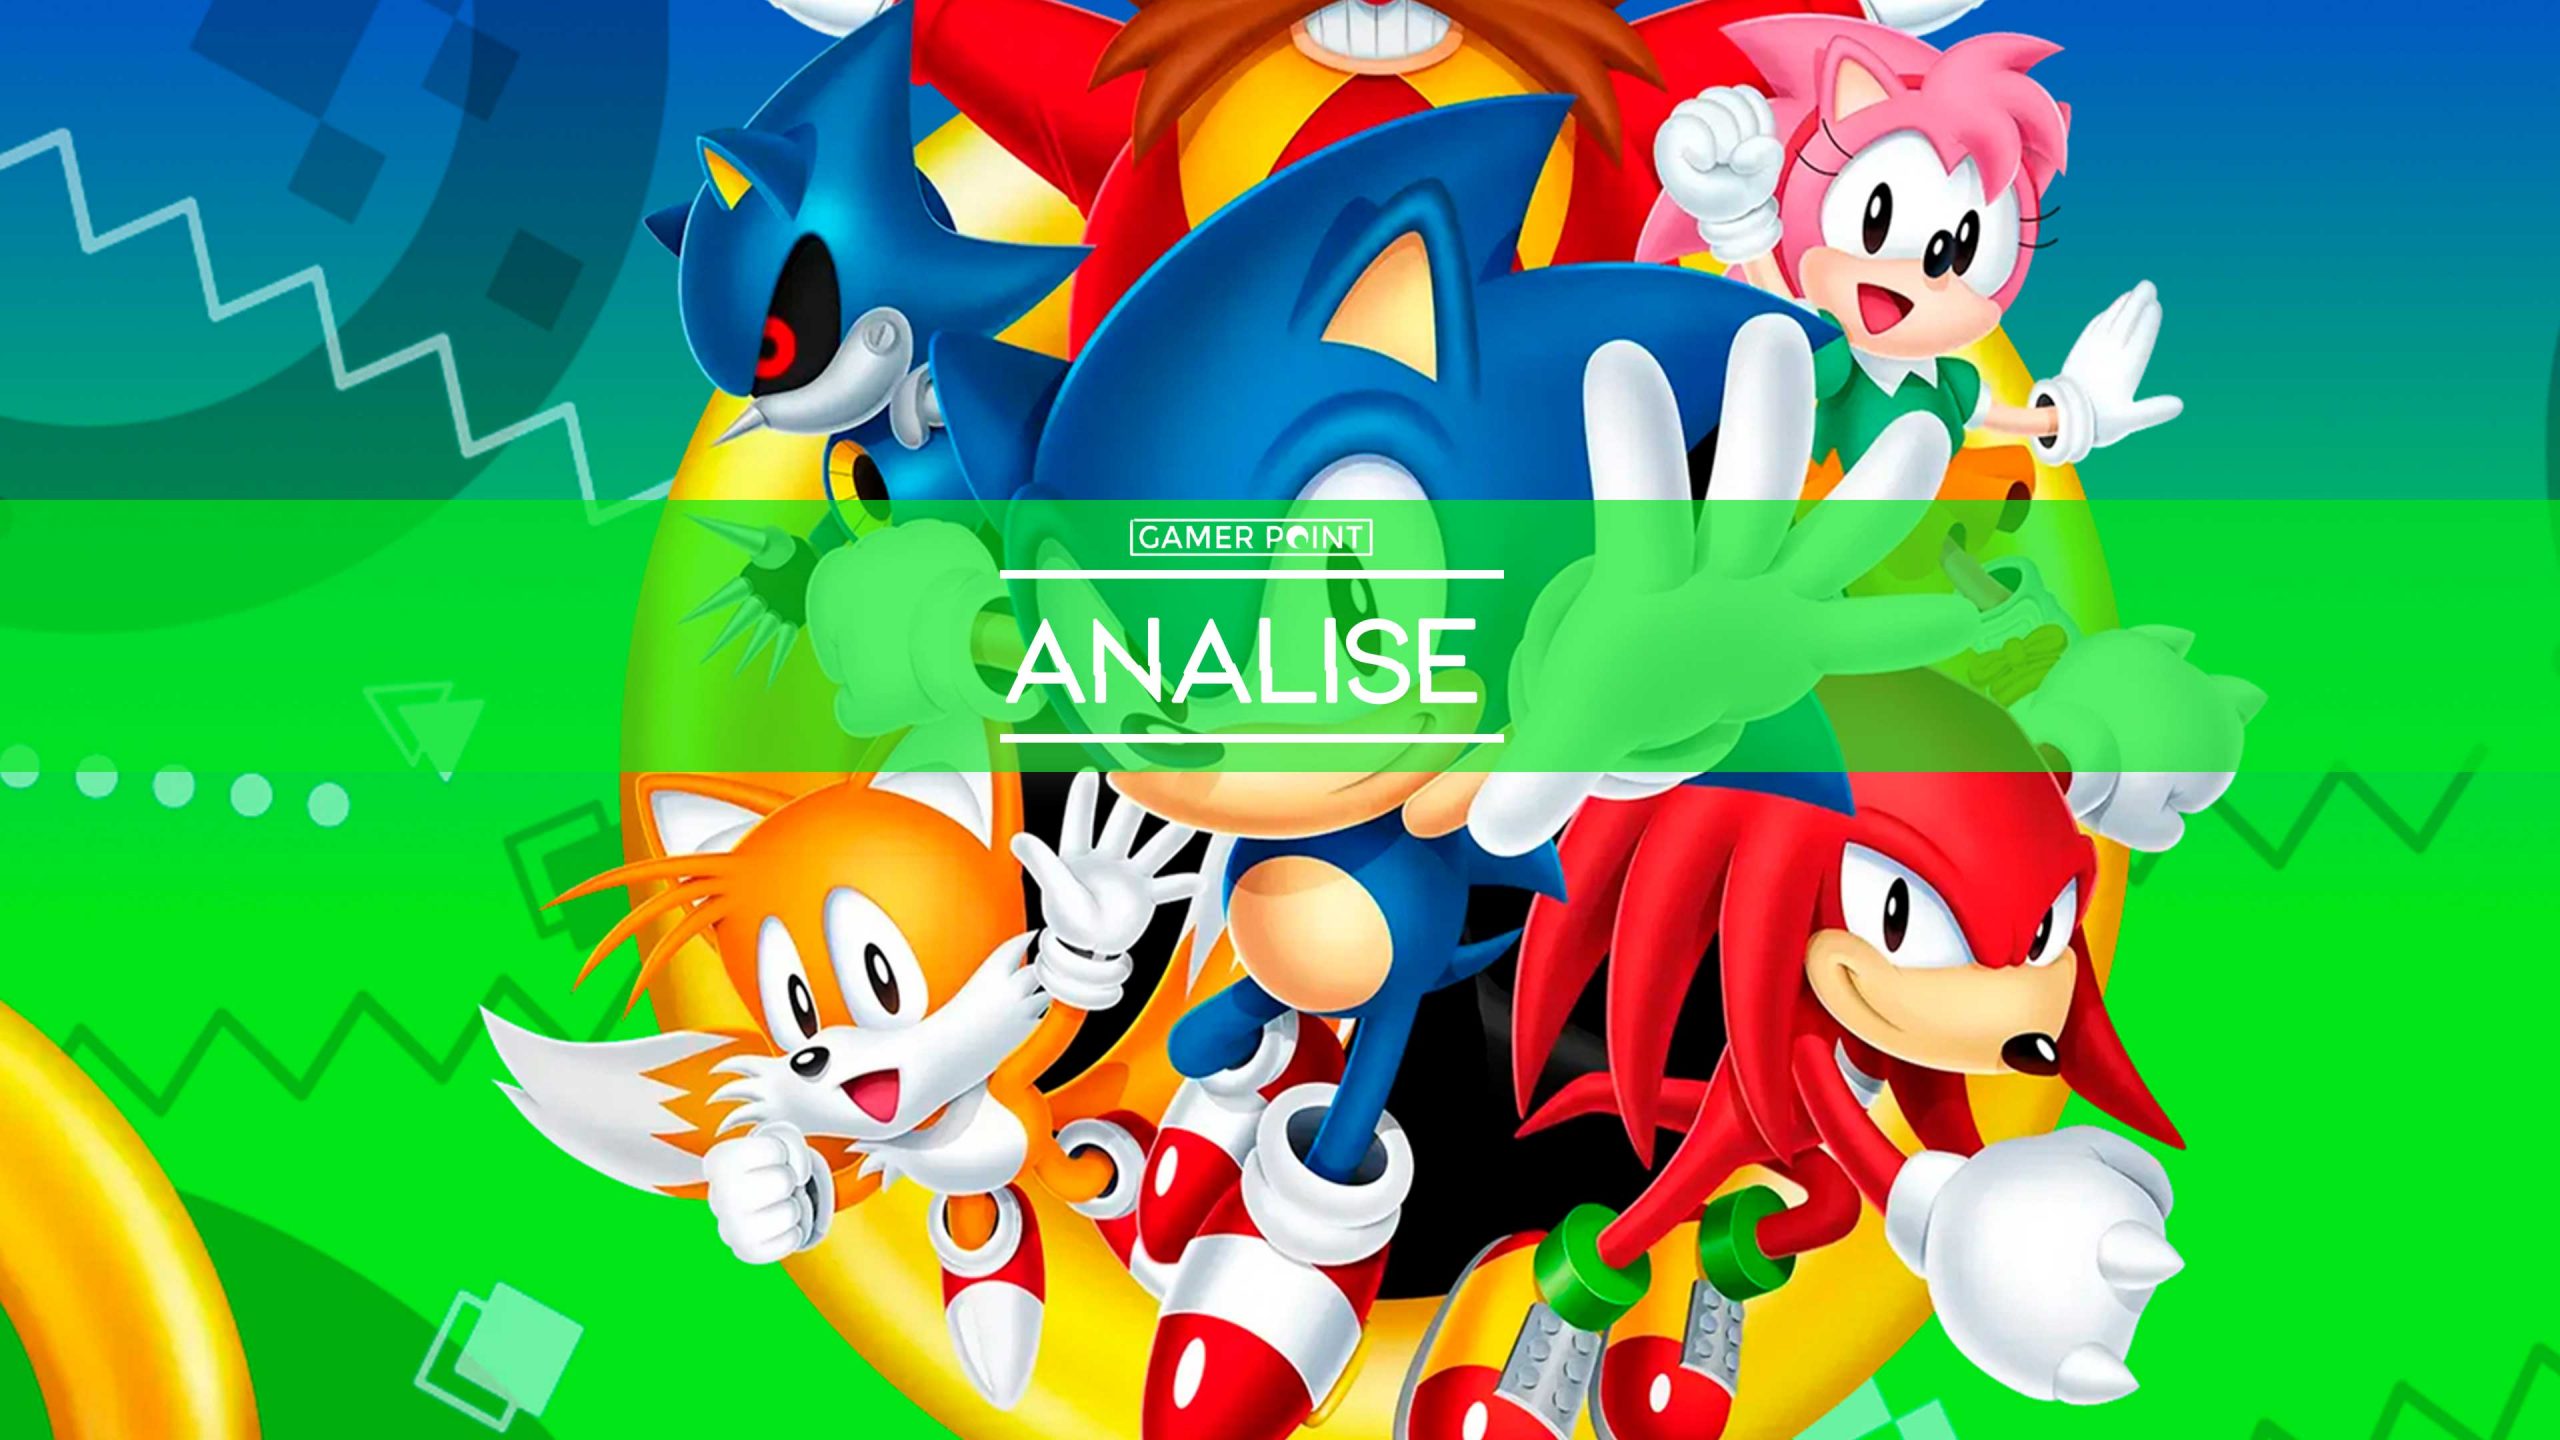 Review Sonic Origins (Switch) - Uma iniciação divertida e cara - Jogando  Casualmente